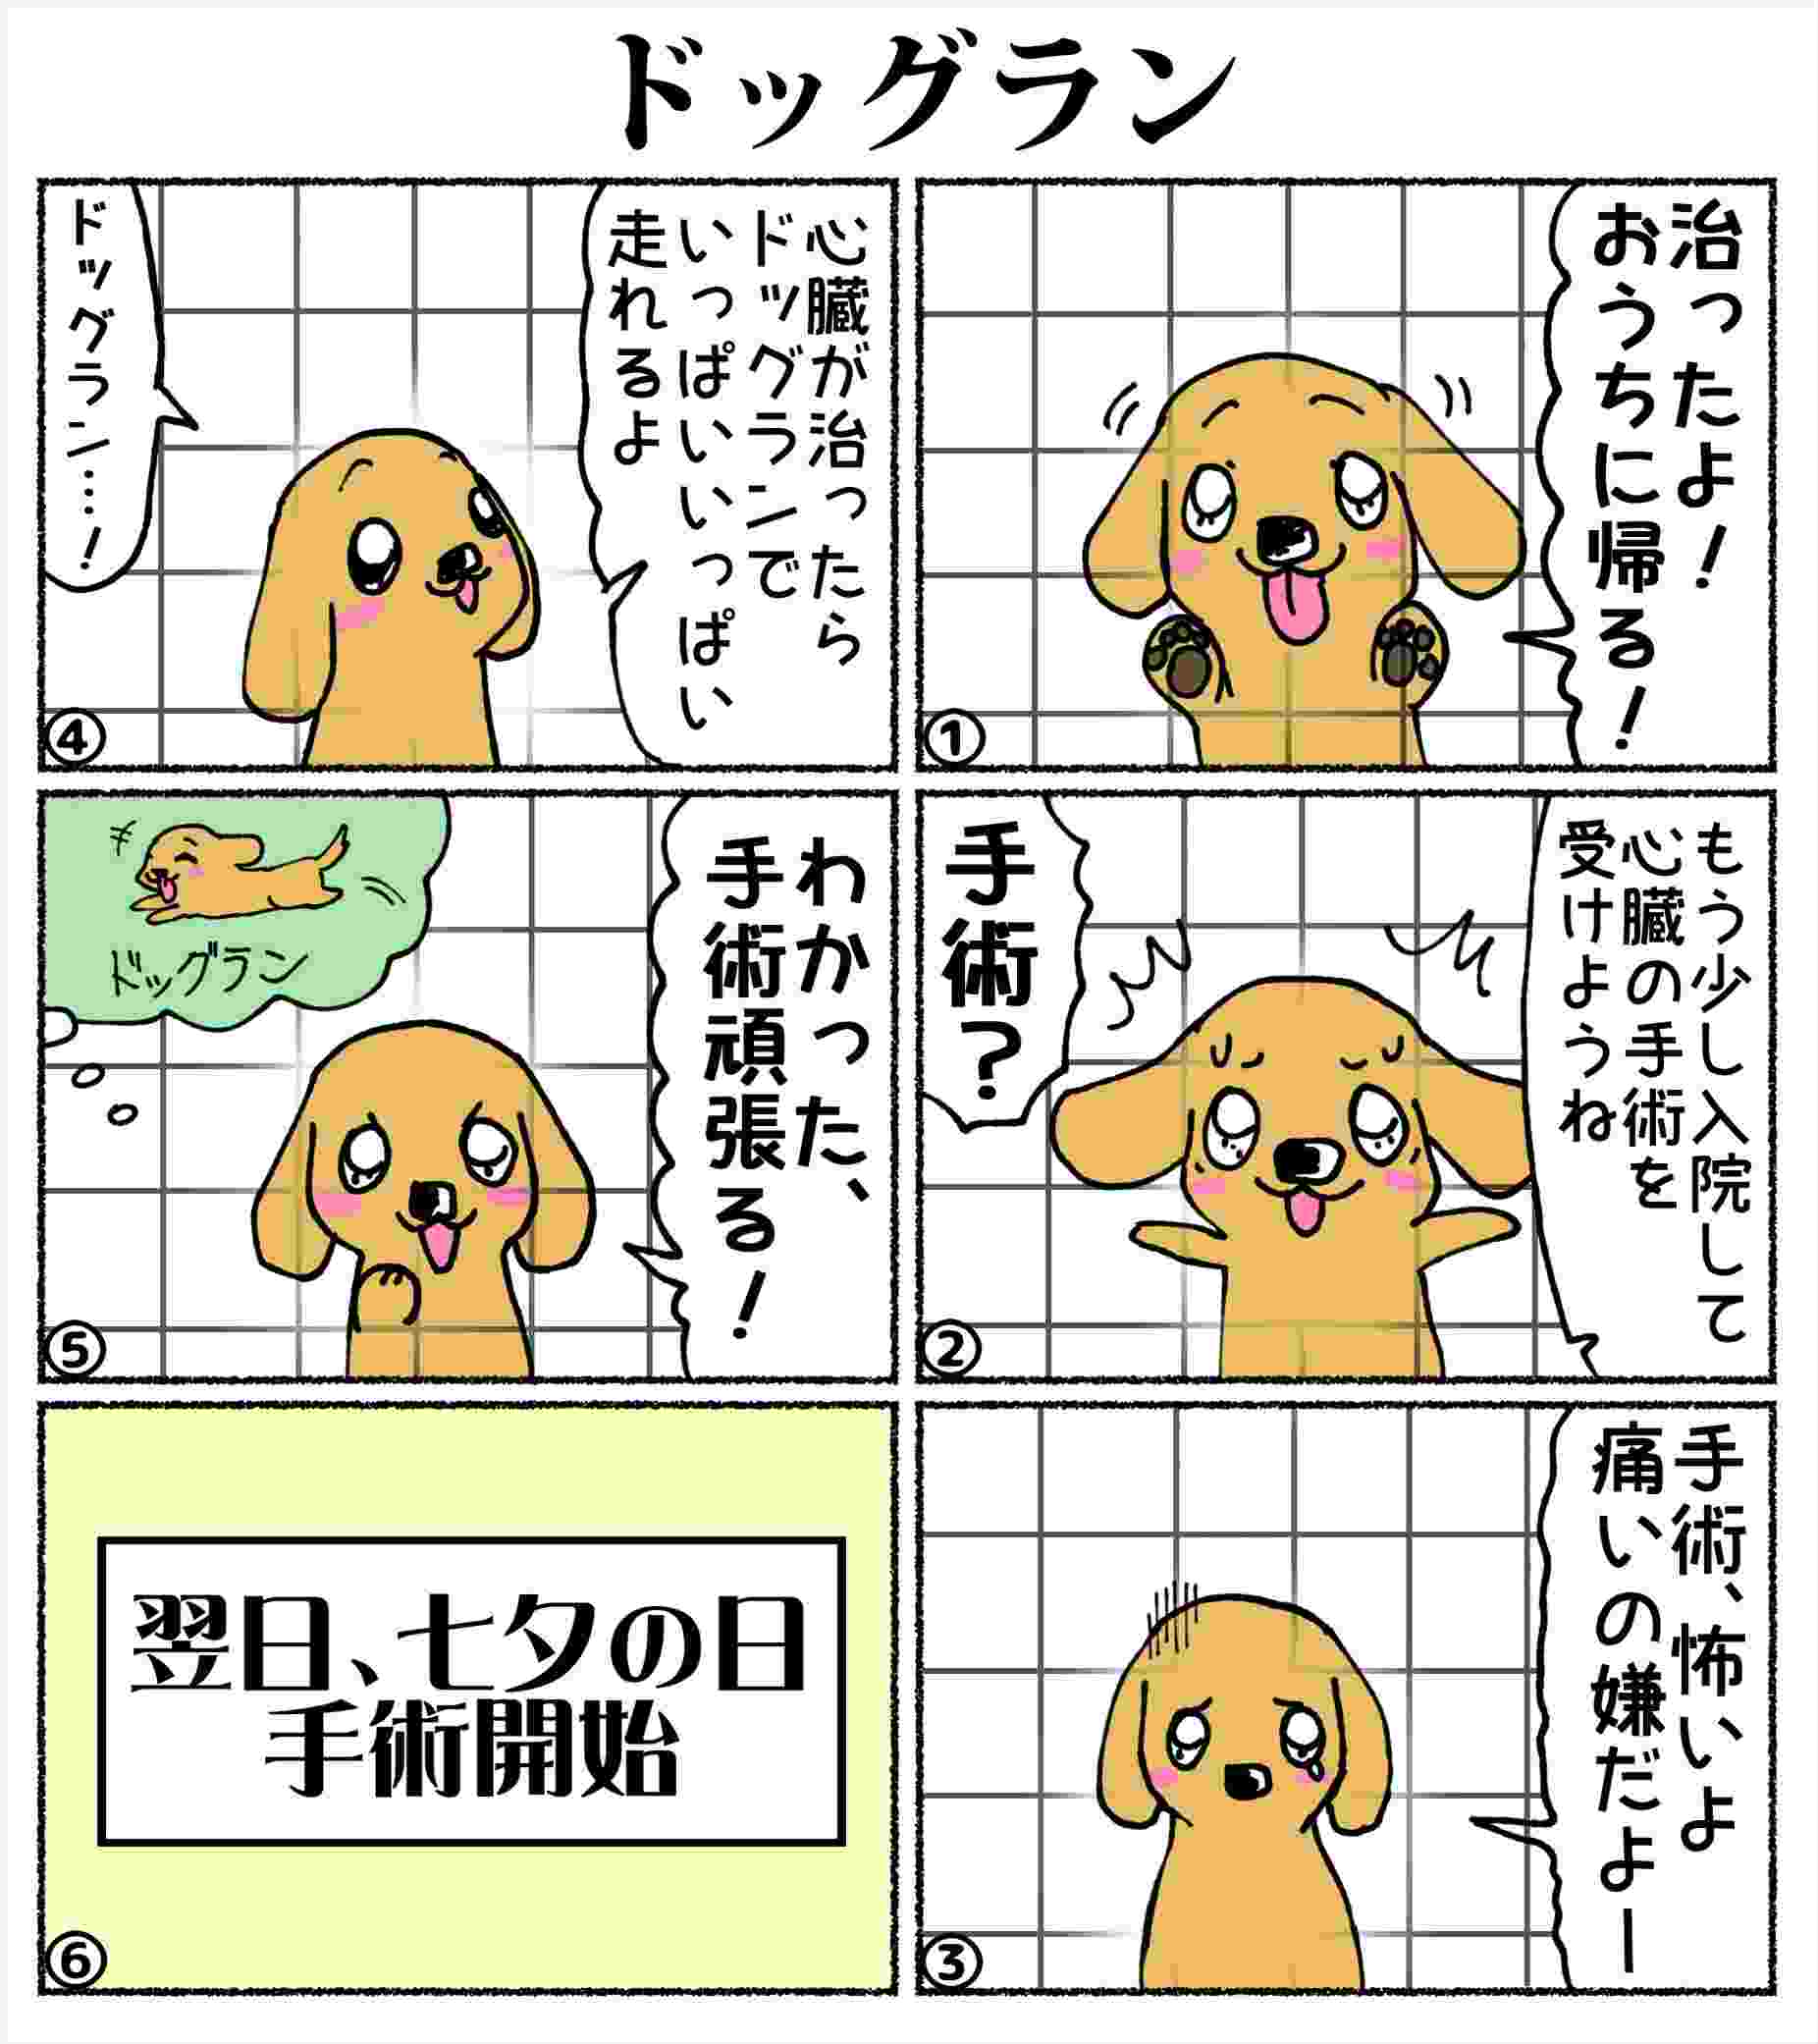 あいちゃん6コマ漫画12 ドッグラン ときめき カウントダウン